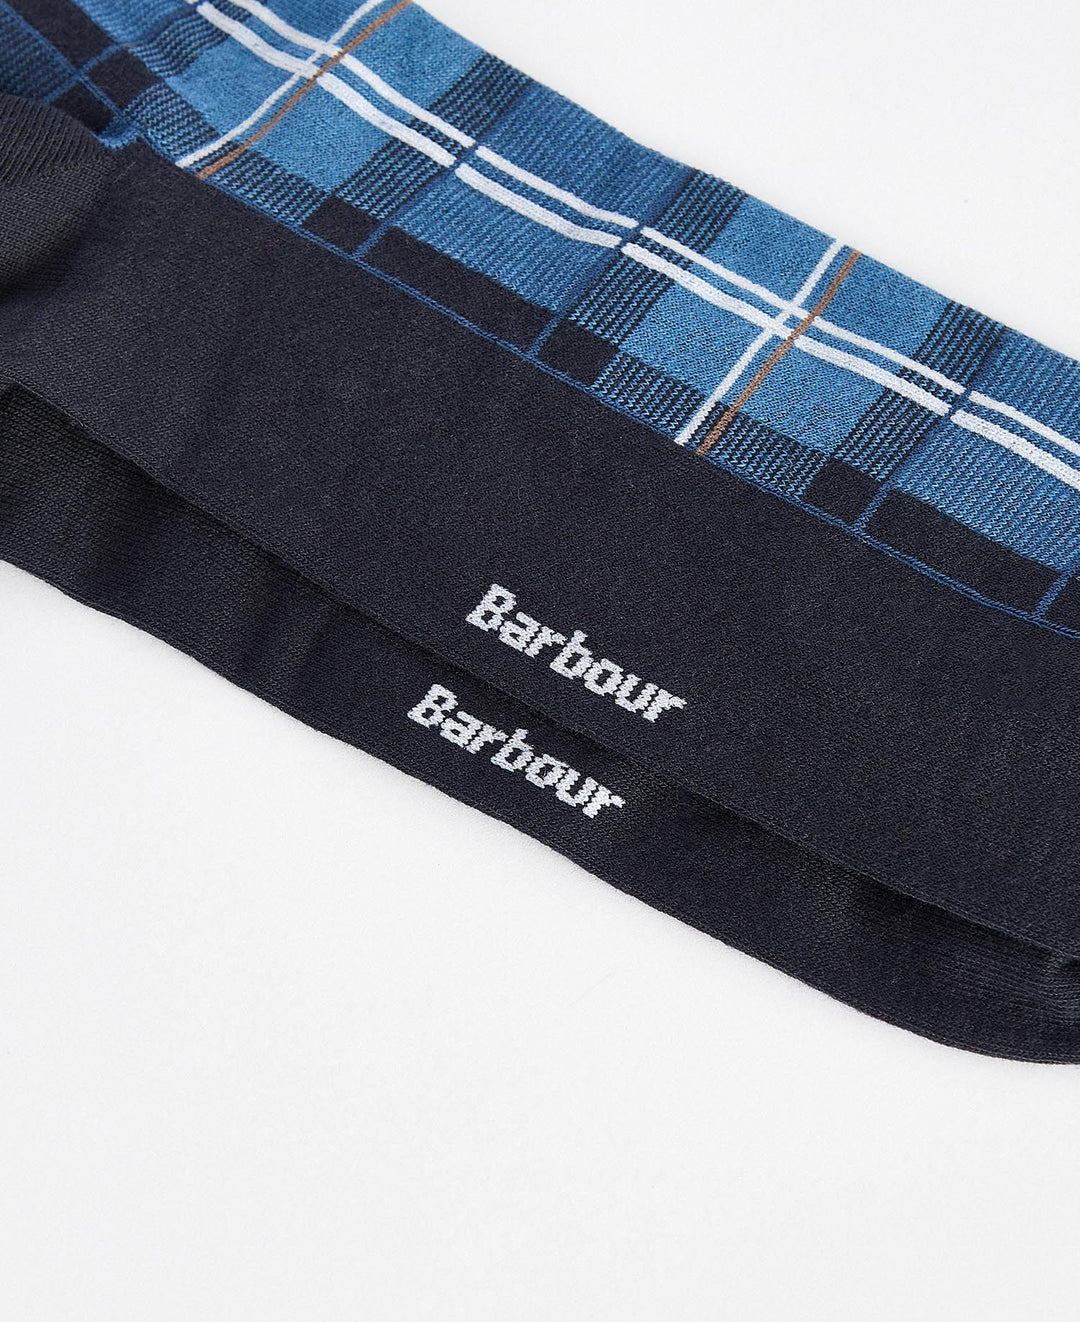 Barbour Blyth Sock/Čarape MSO0199